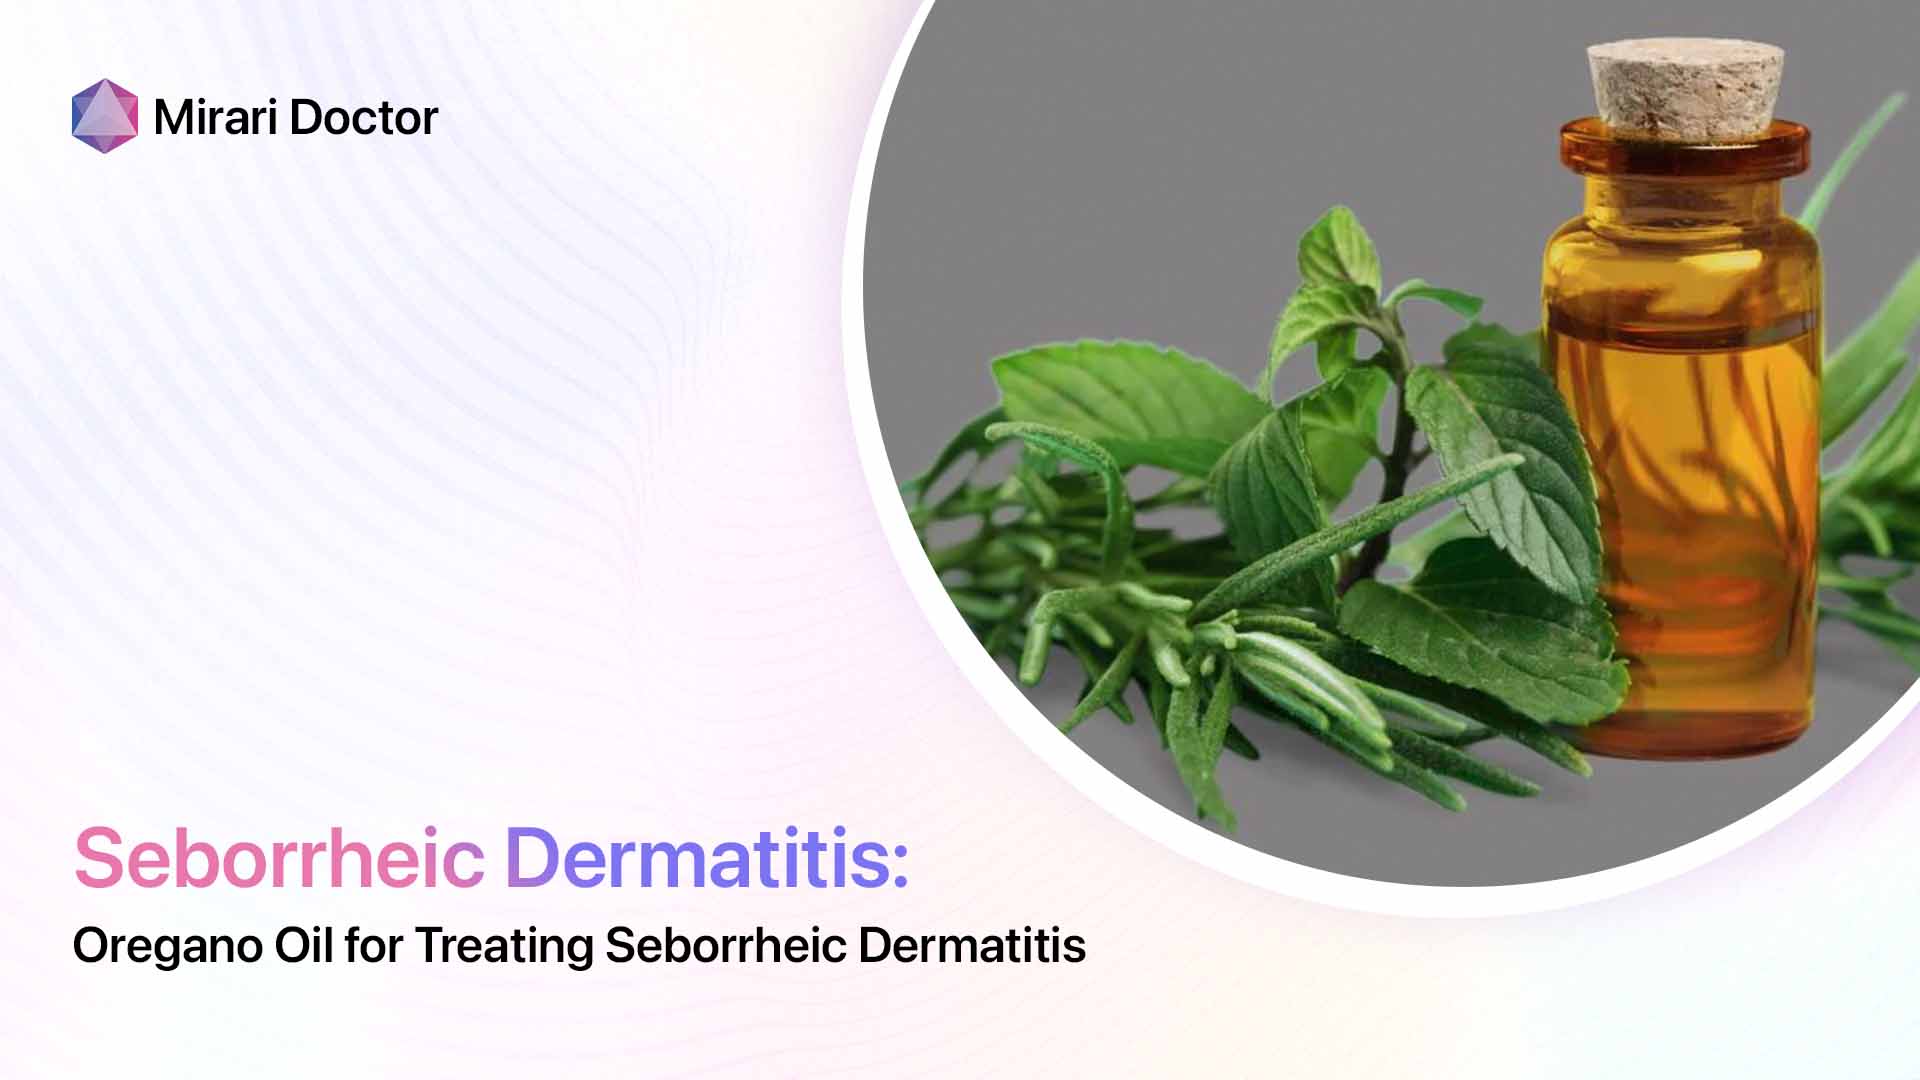 Featured image for “Oregano Oil for Treating Seborrheic Dermatitis”